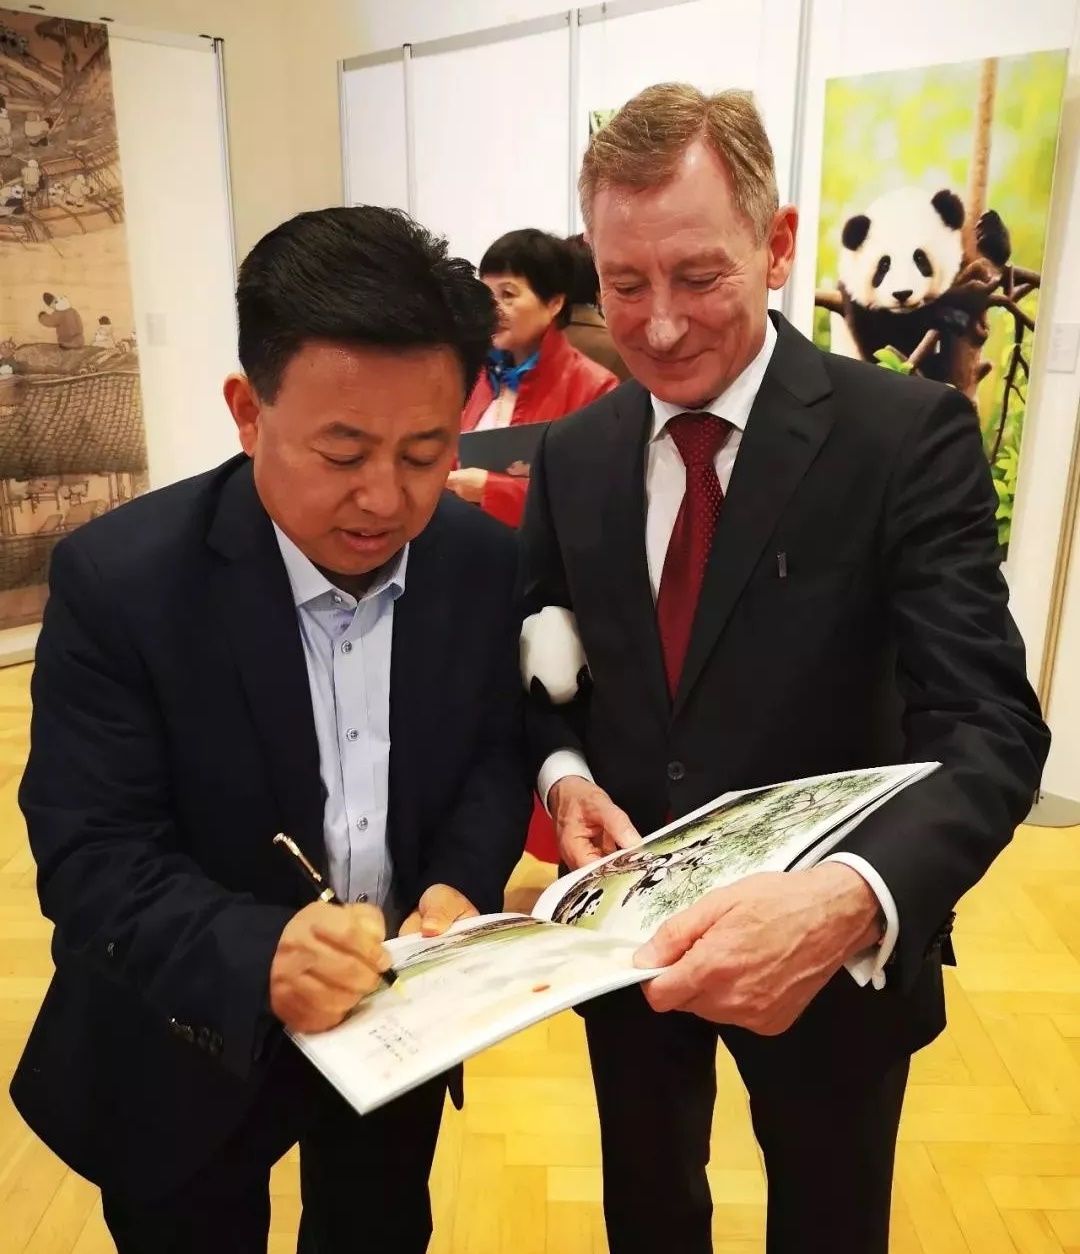 “国宝工匠熊猫画家”吴长江的作品于6月1日在纽约《美中文化周》、成都仁恒置地同时开展